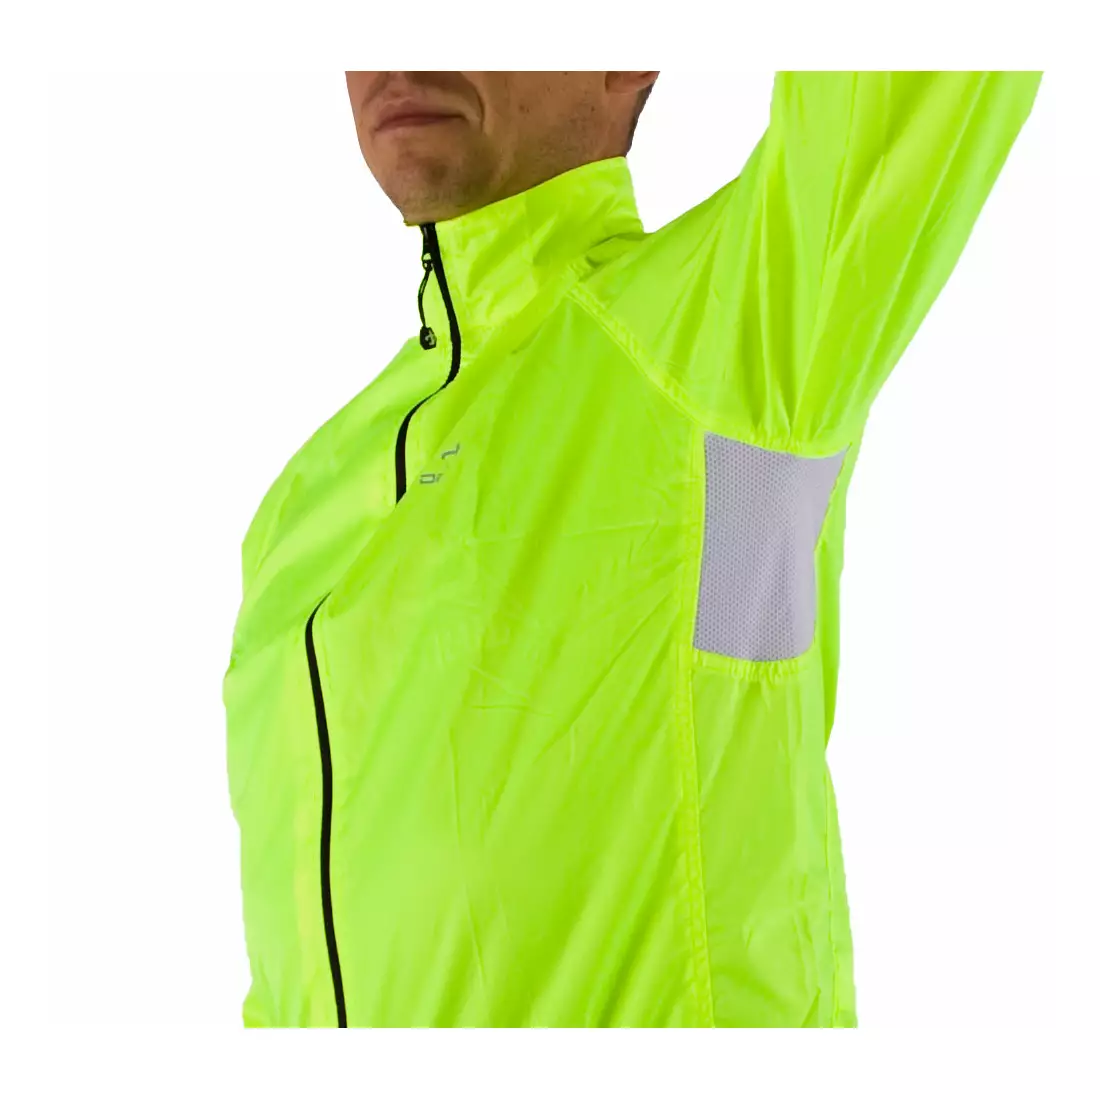 DEKO RAIN 2 lehká cyklistická bunda do deště, fluor